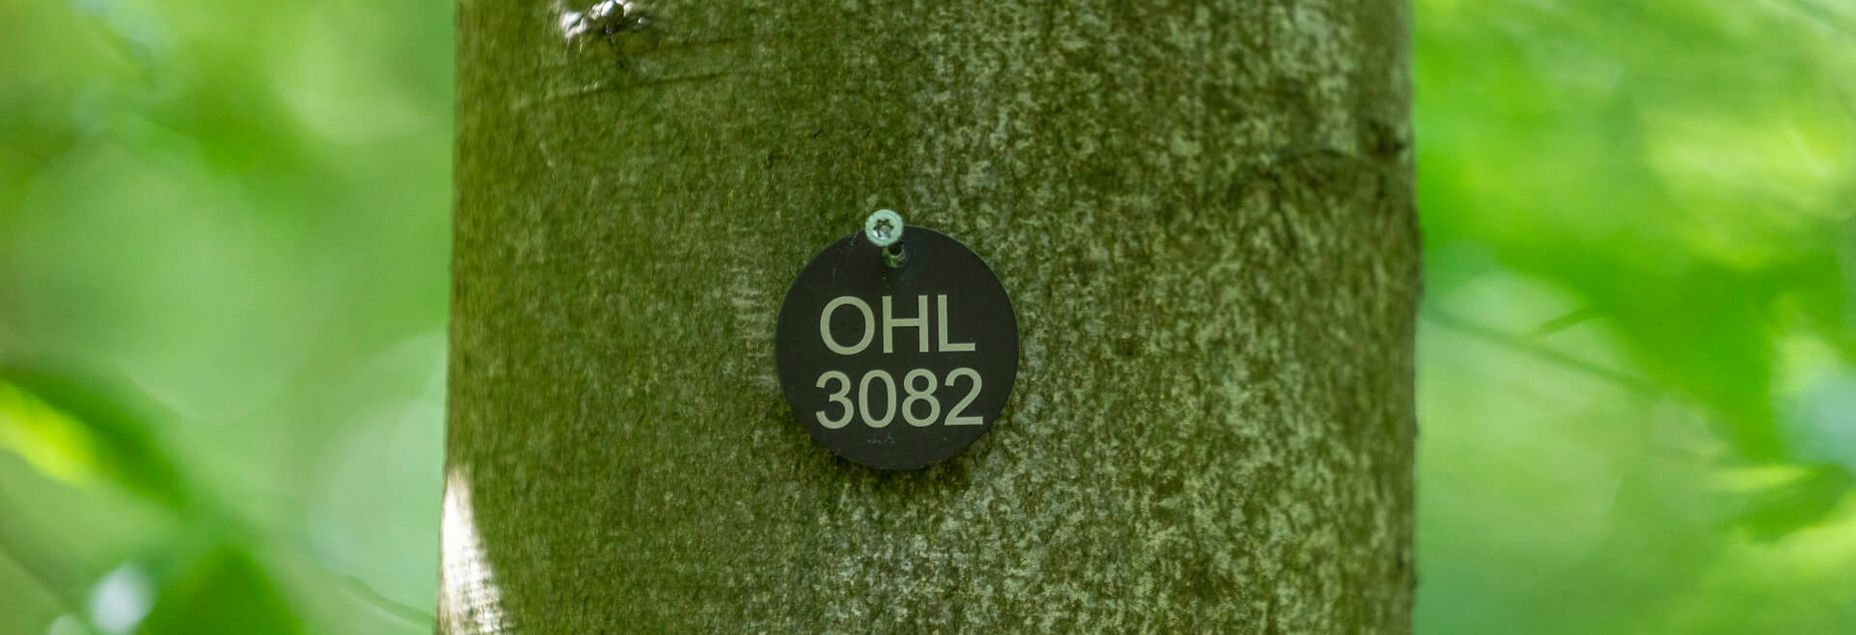 FriedWald-Onlineshop OHL 3082